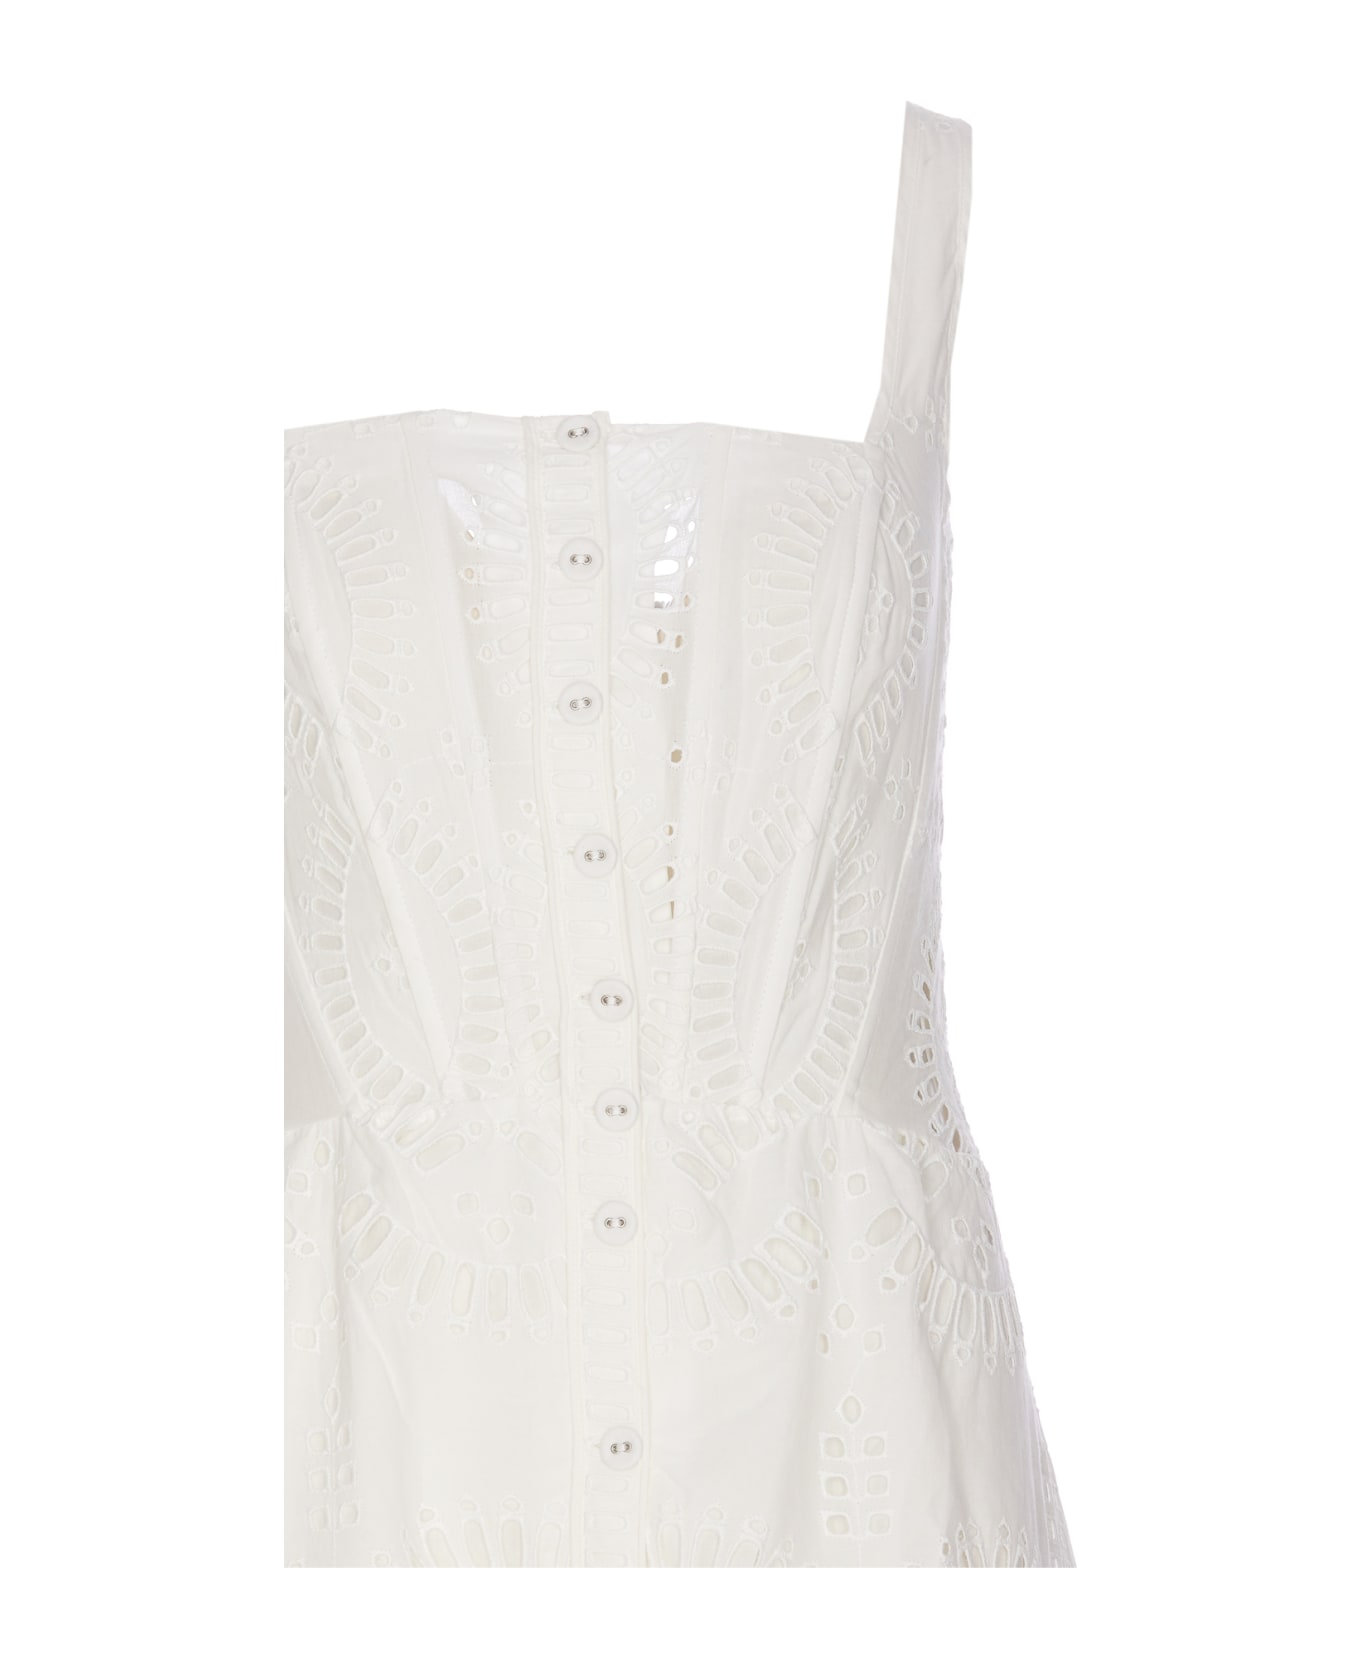 Charo Ruiz Nyssi Dress - White